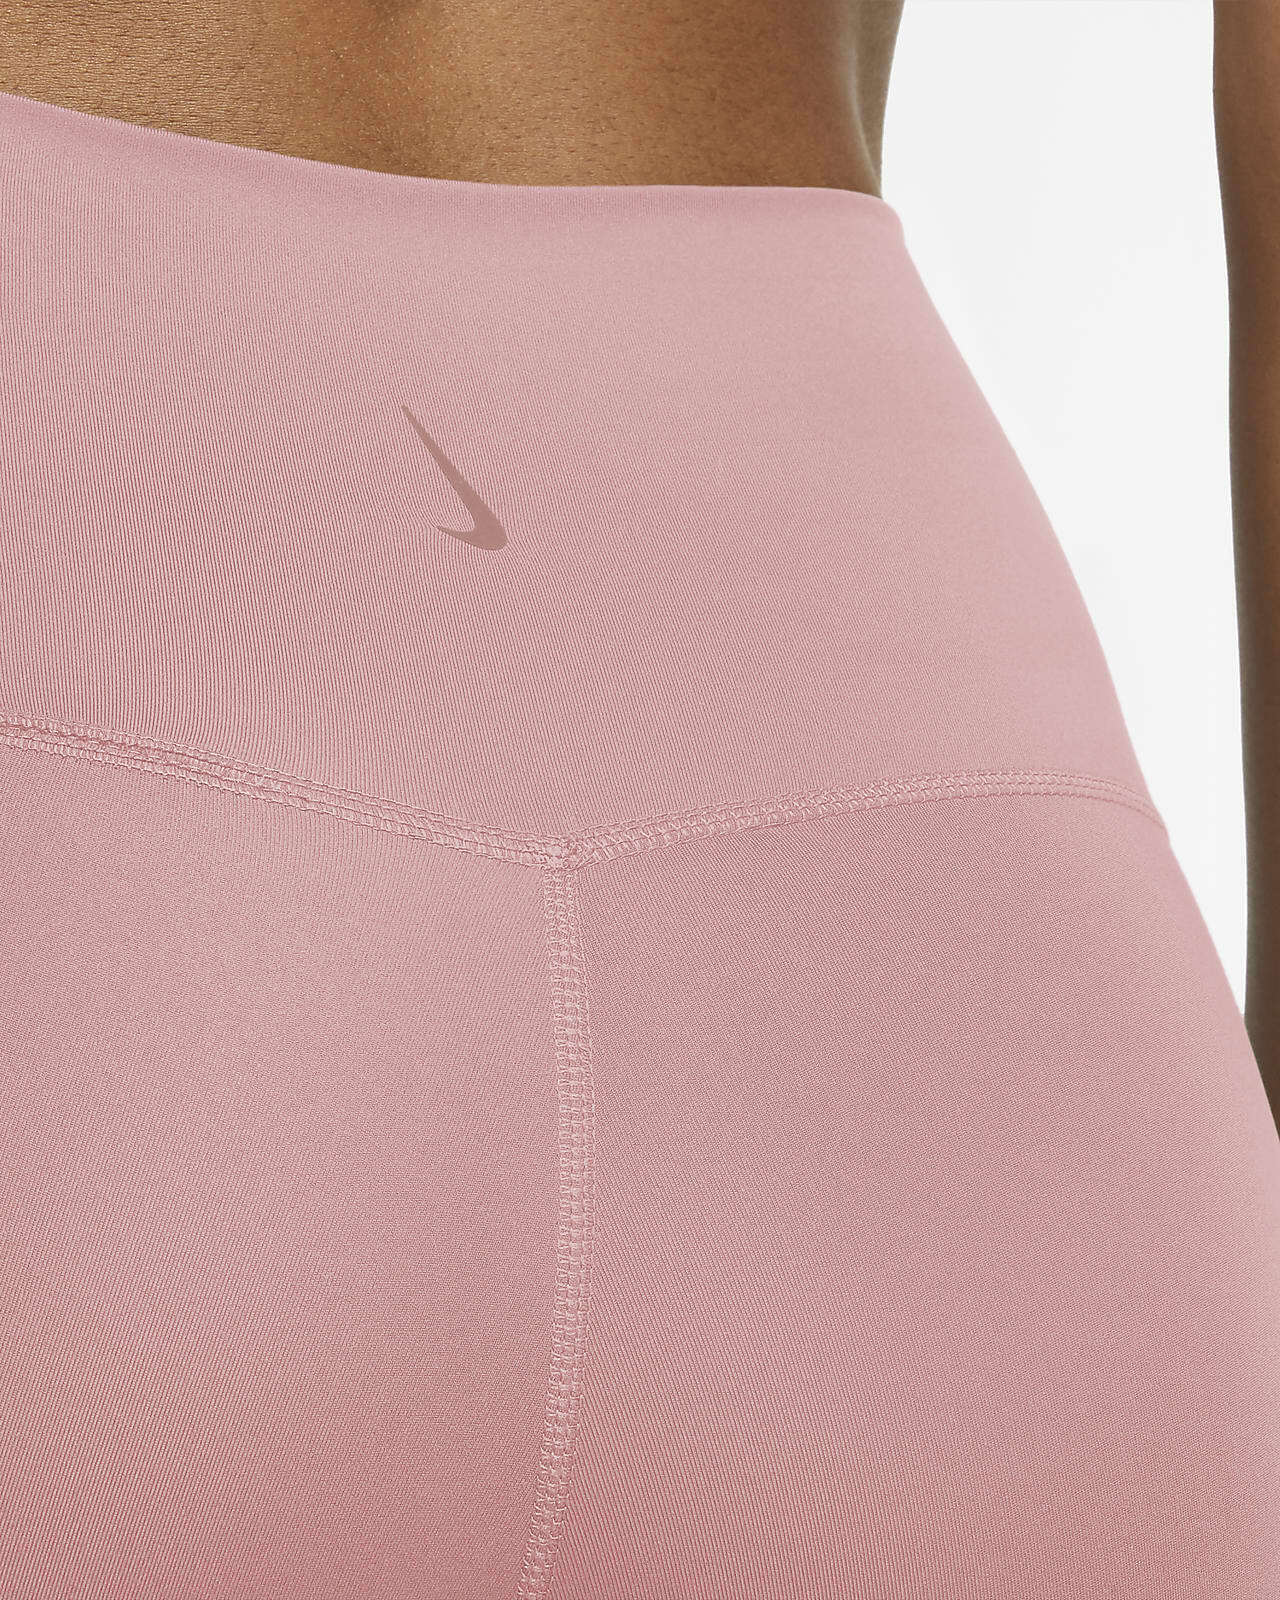 Nike Yoga Women's Pastel Pink 7/8 Leggings